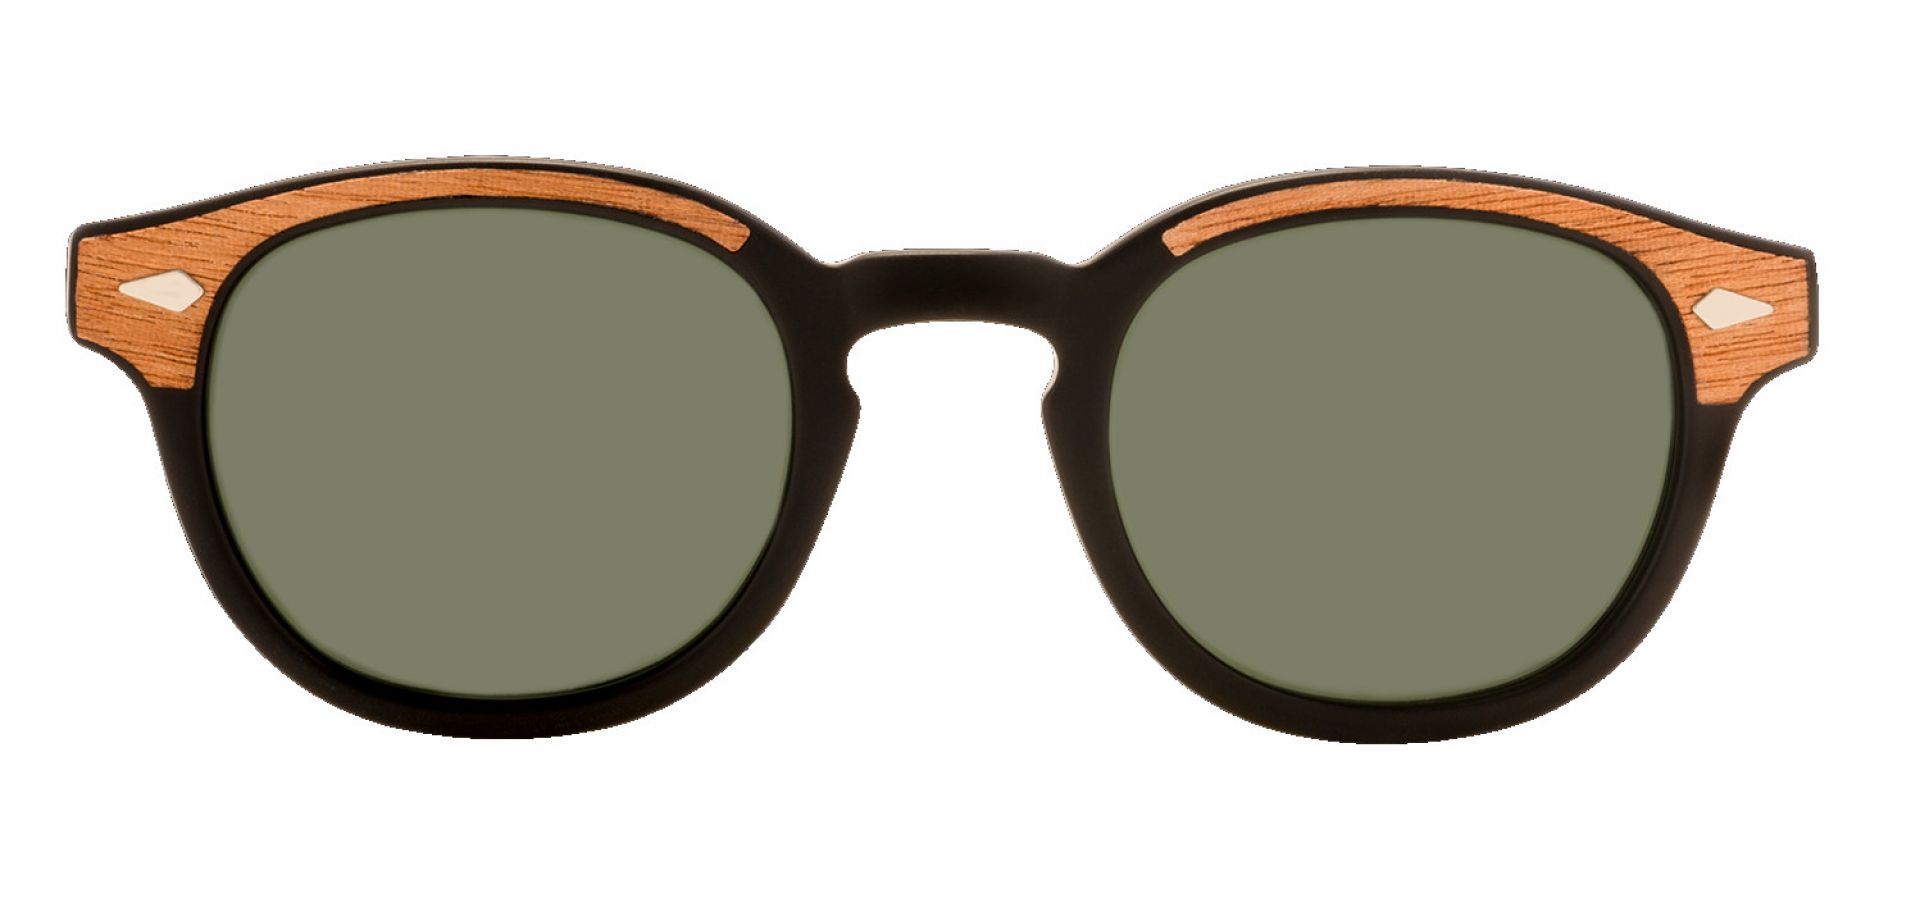 Sončna očala Moscot LEMTOSH: Velikost: 49/21/140, Spol: unisex, Material: acetat